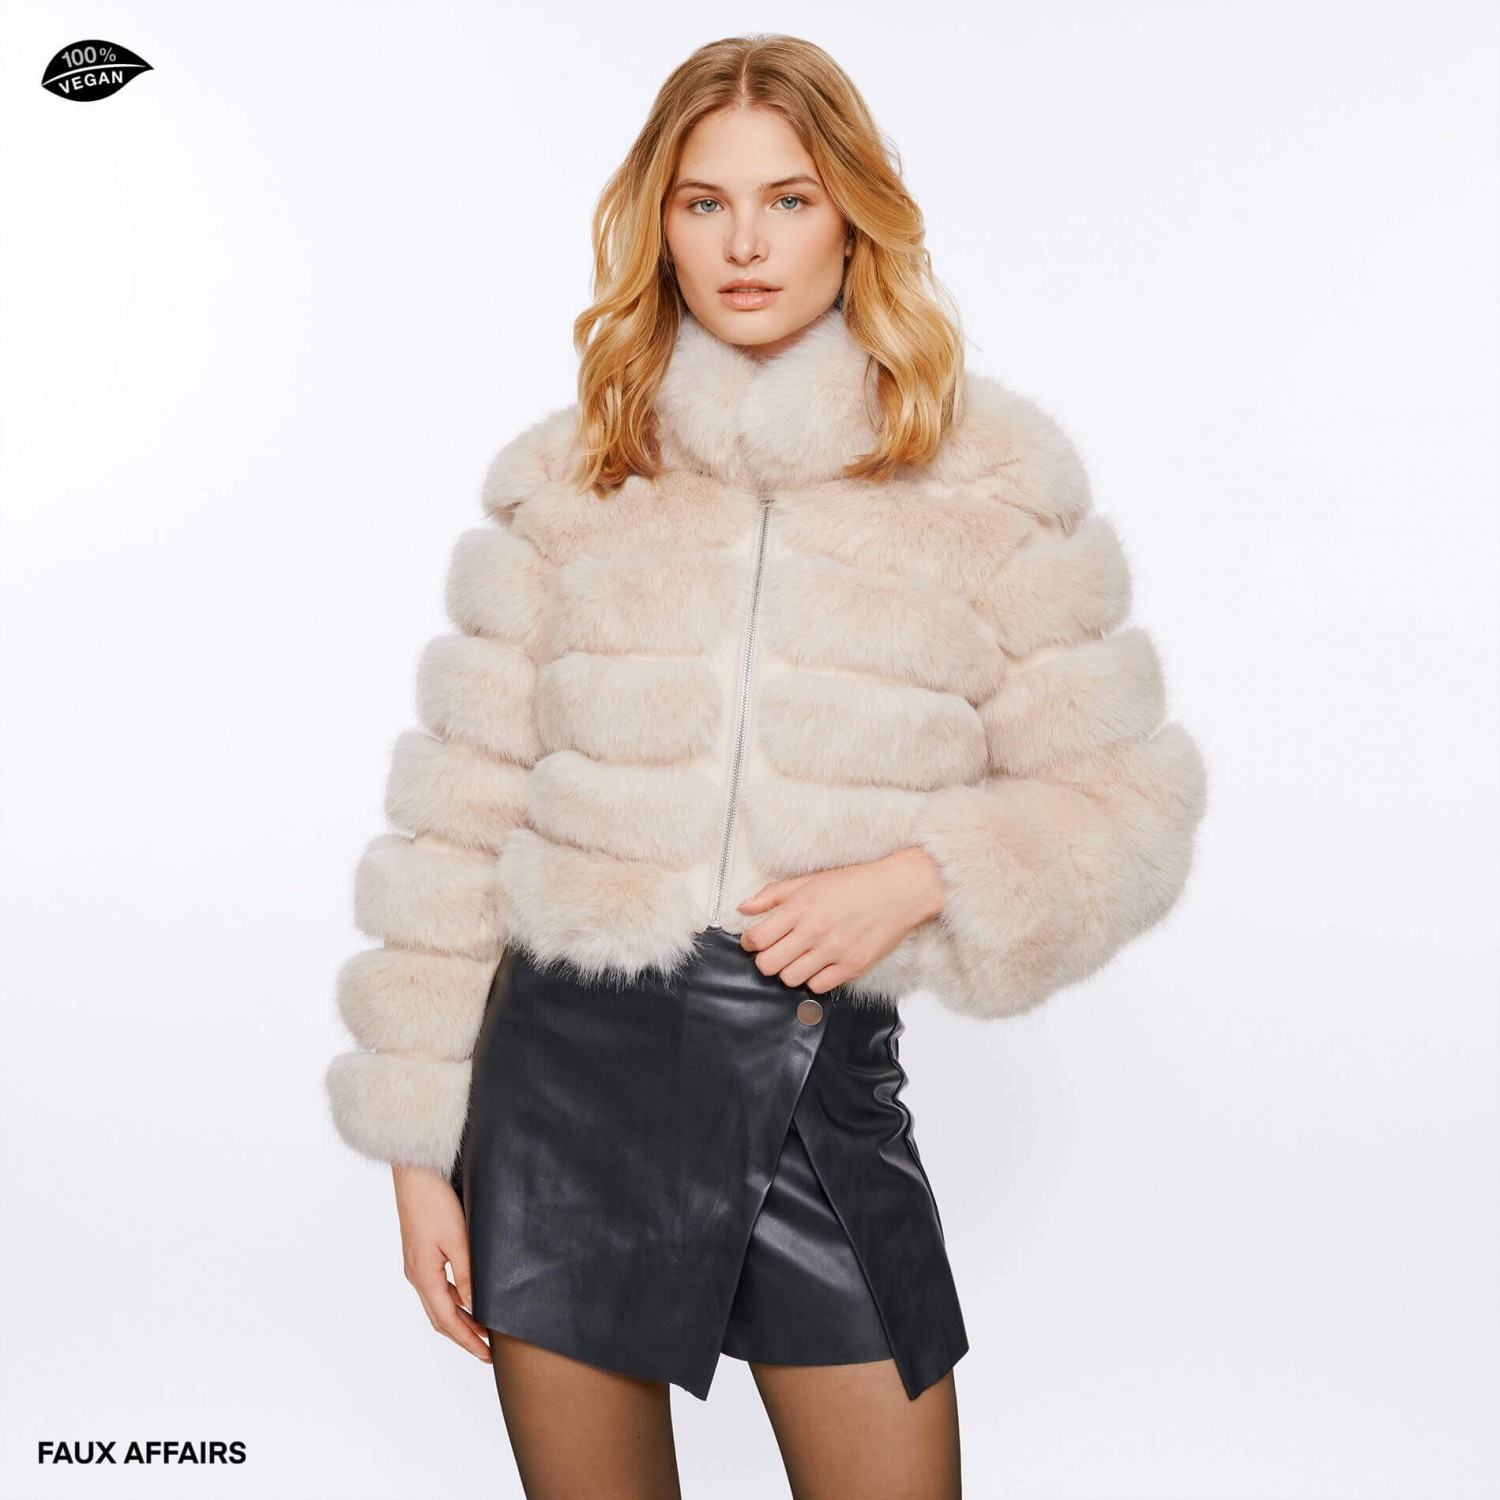 Faux Fur cropped jacket